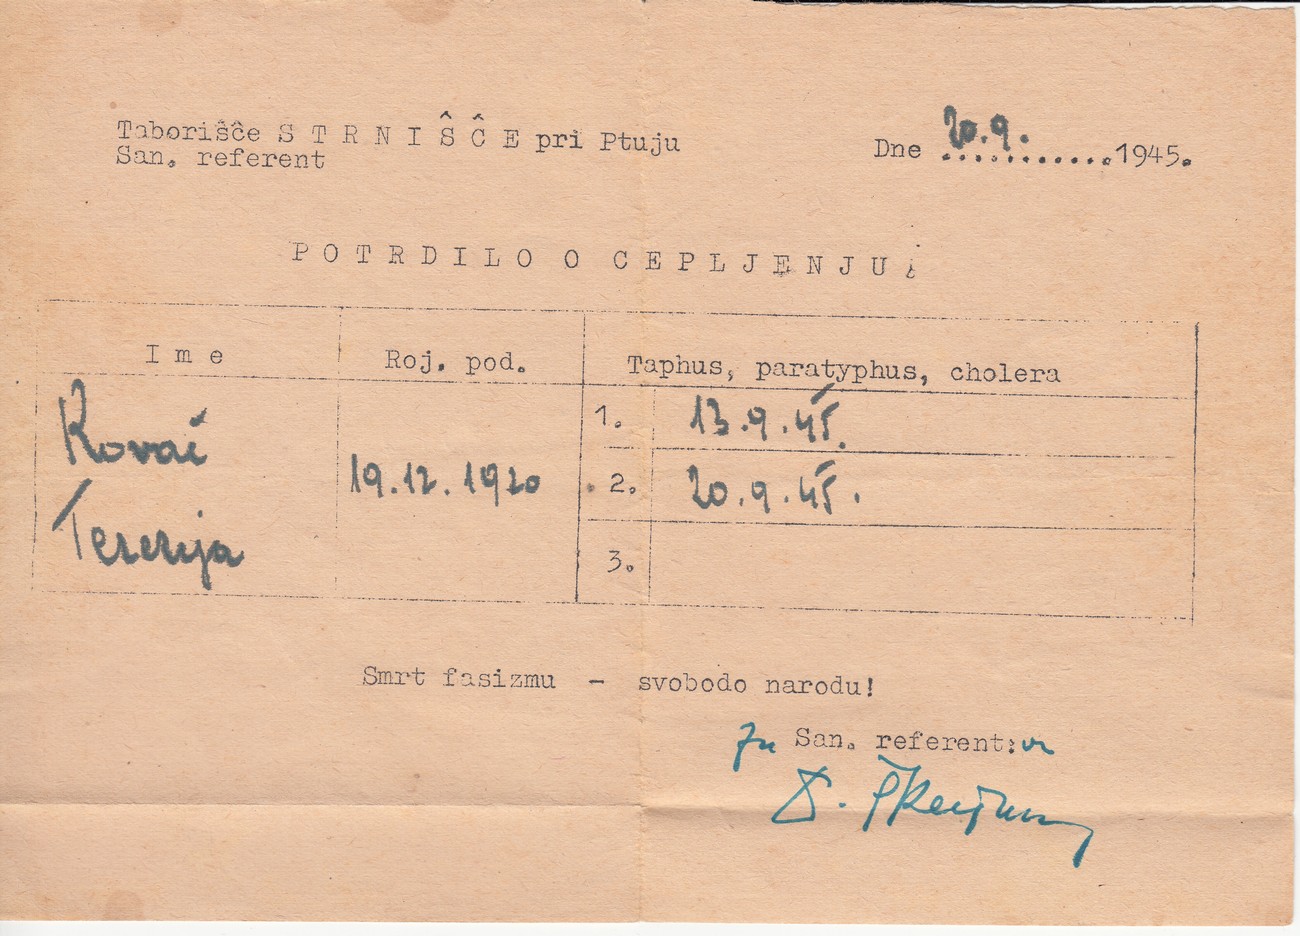 Potrdilo o cepljenju v taborišču Strnišče pri Ptuju. Dokumentacija INV, Enota v Lendavi.